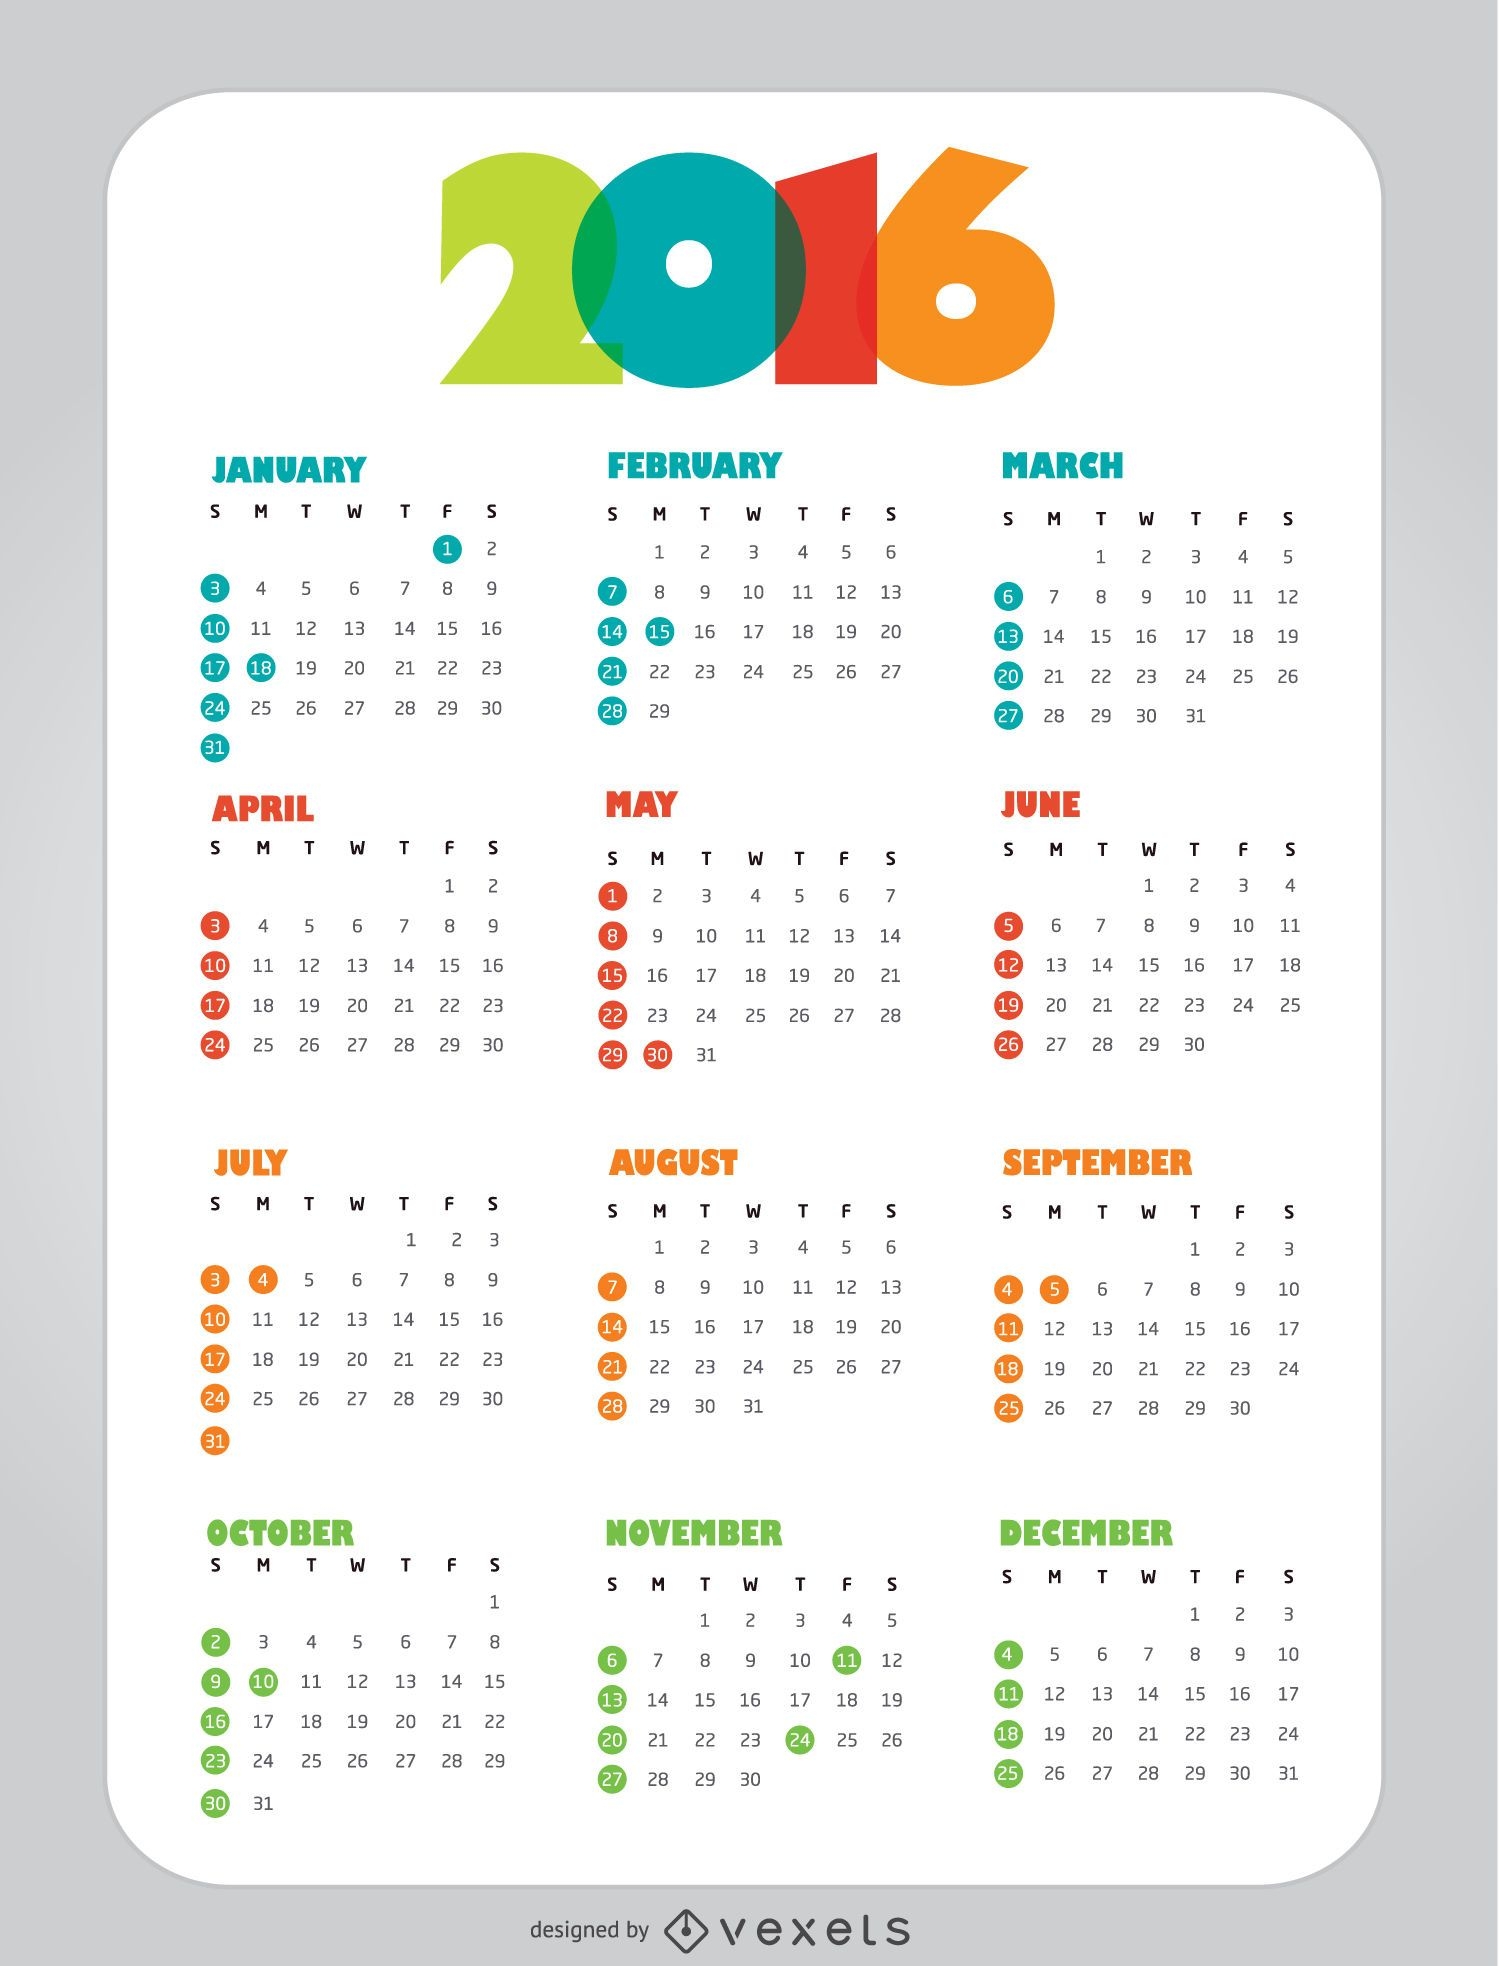 Descarga Vector Calendario 2016